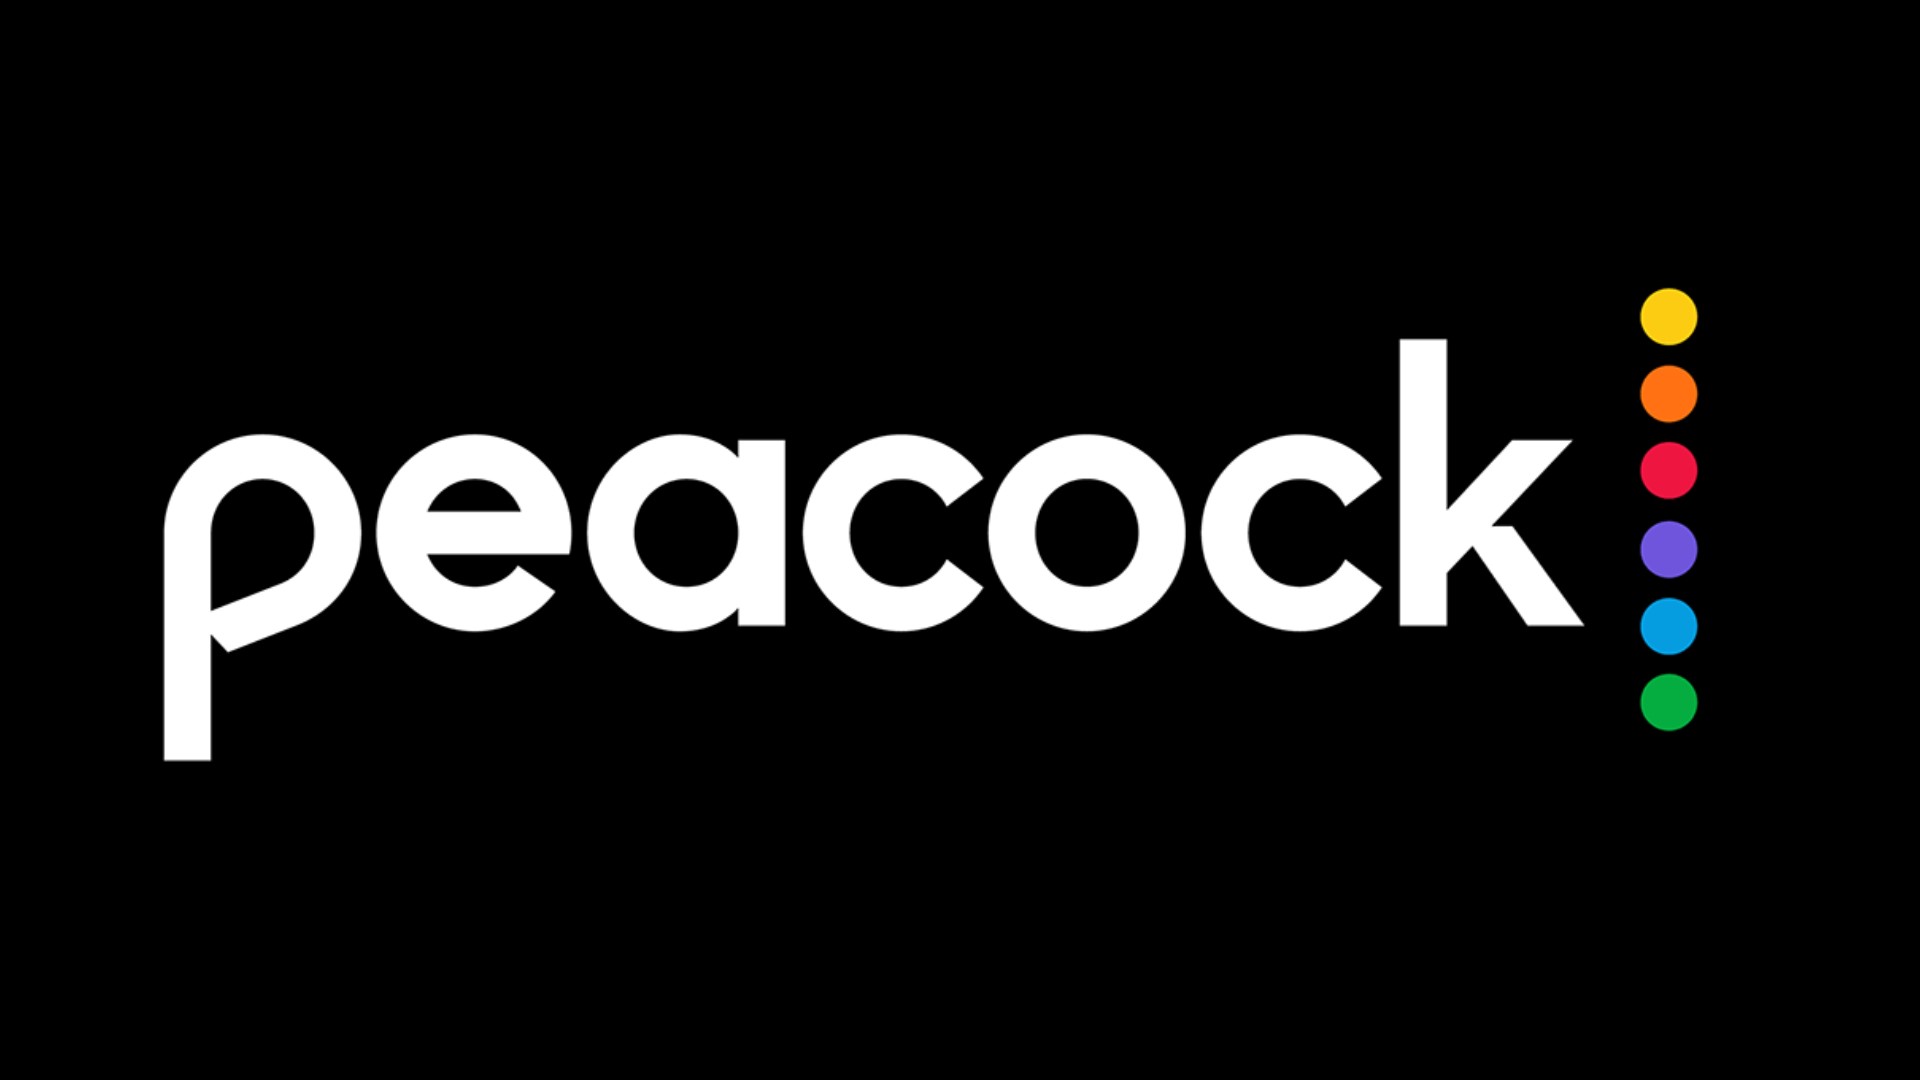 Peacock logo large